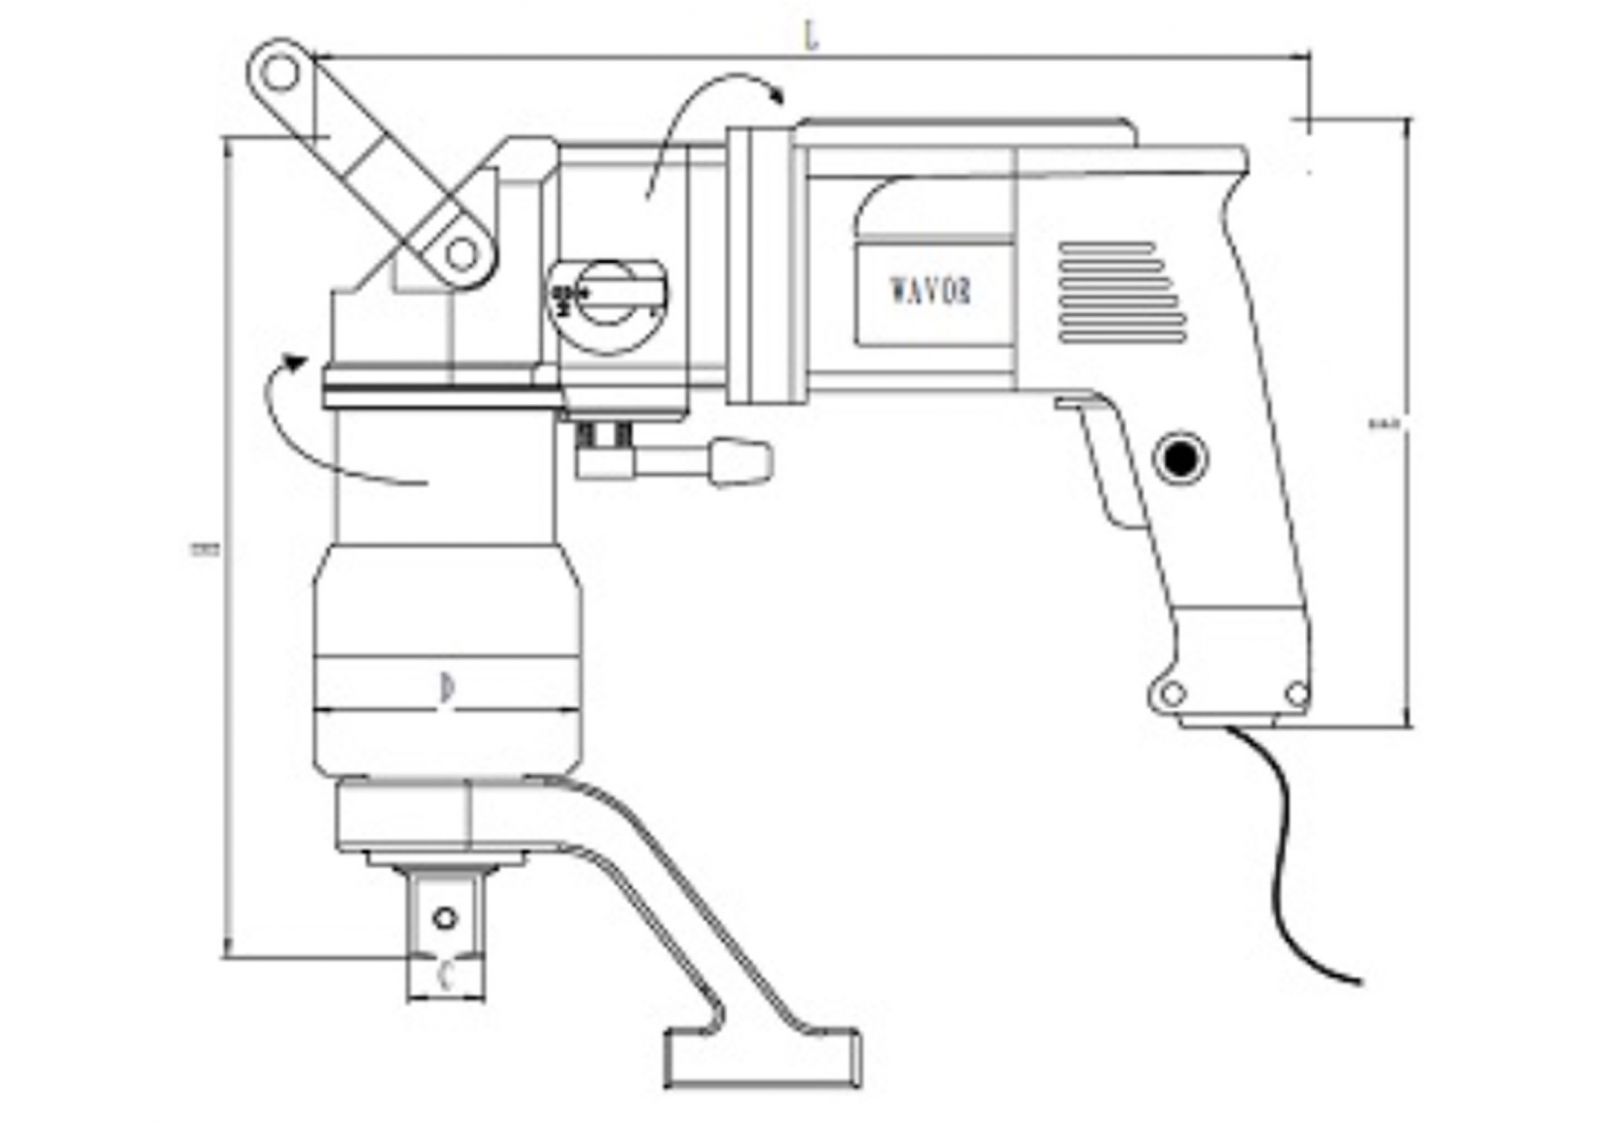 Bản vẽ kỹ thuật của Súng siết bulong dùng điện Wavor HD-110i